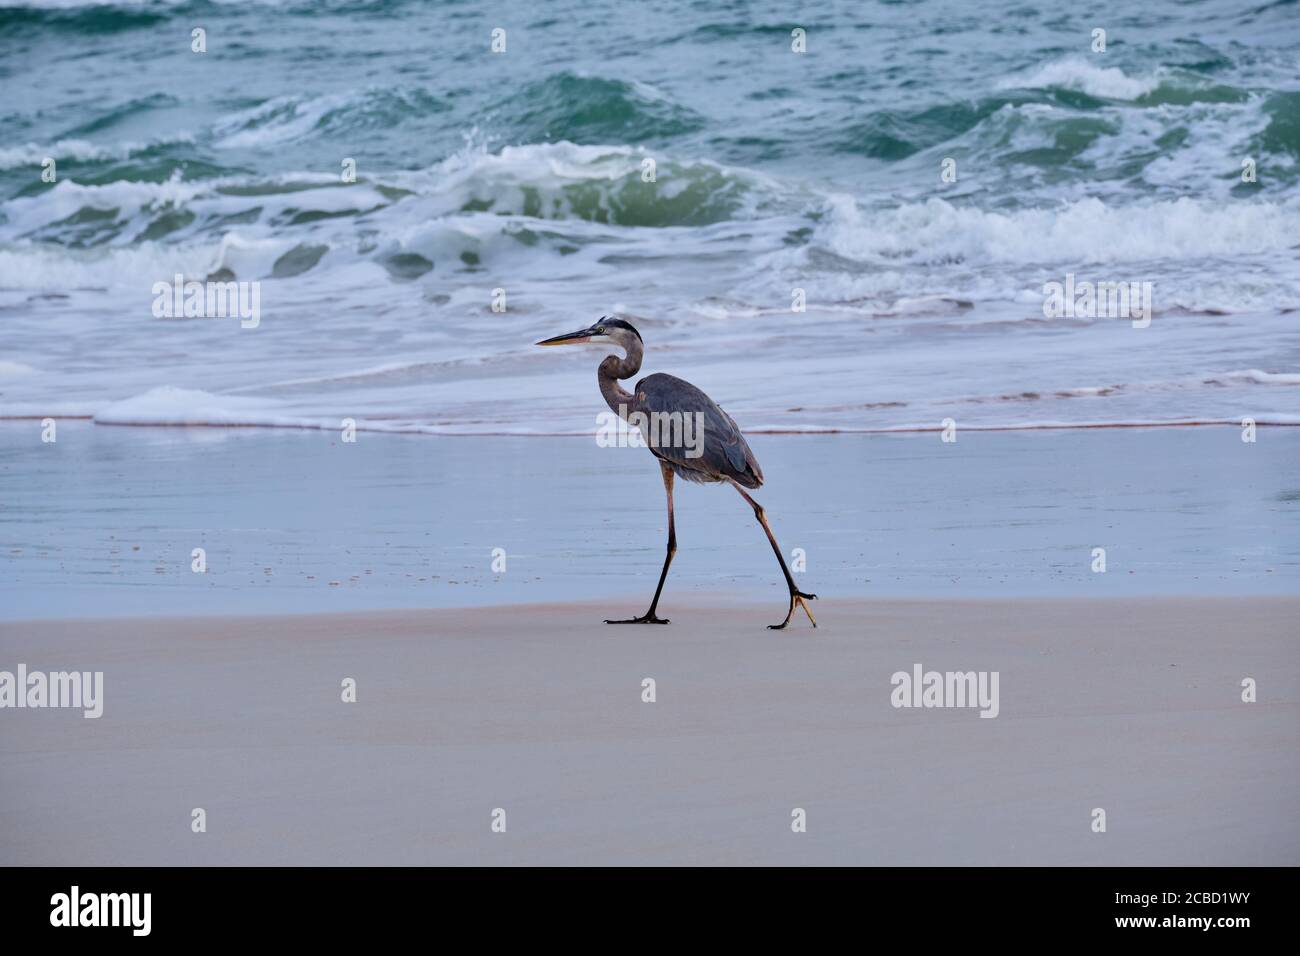 Great Blue Heron marche lentement le long de la ligne d'eau en observant sa proie dans les vagues entrantes. Côte est de la Floride. Banque D'Images